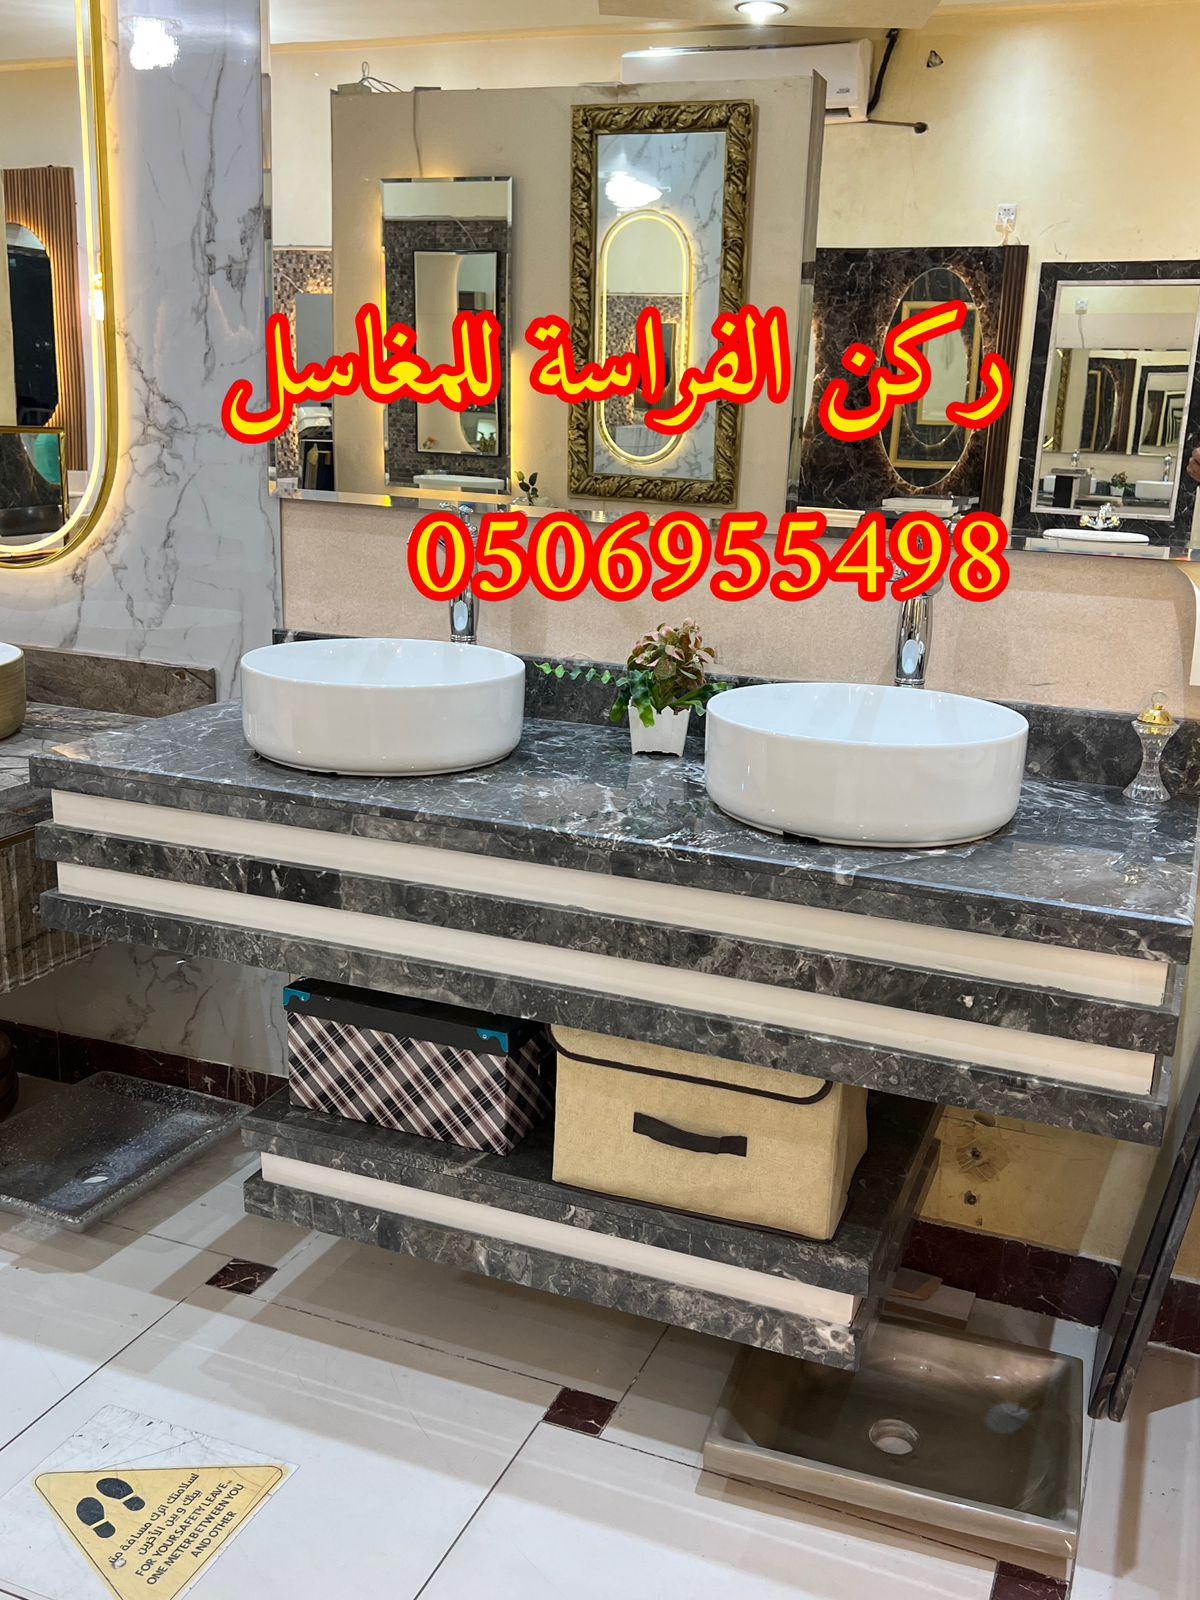 الرياض - تصاميم مغاسل رخام للمجالس في الرياض,0506955498 206275608